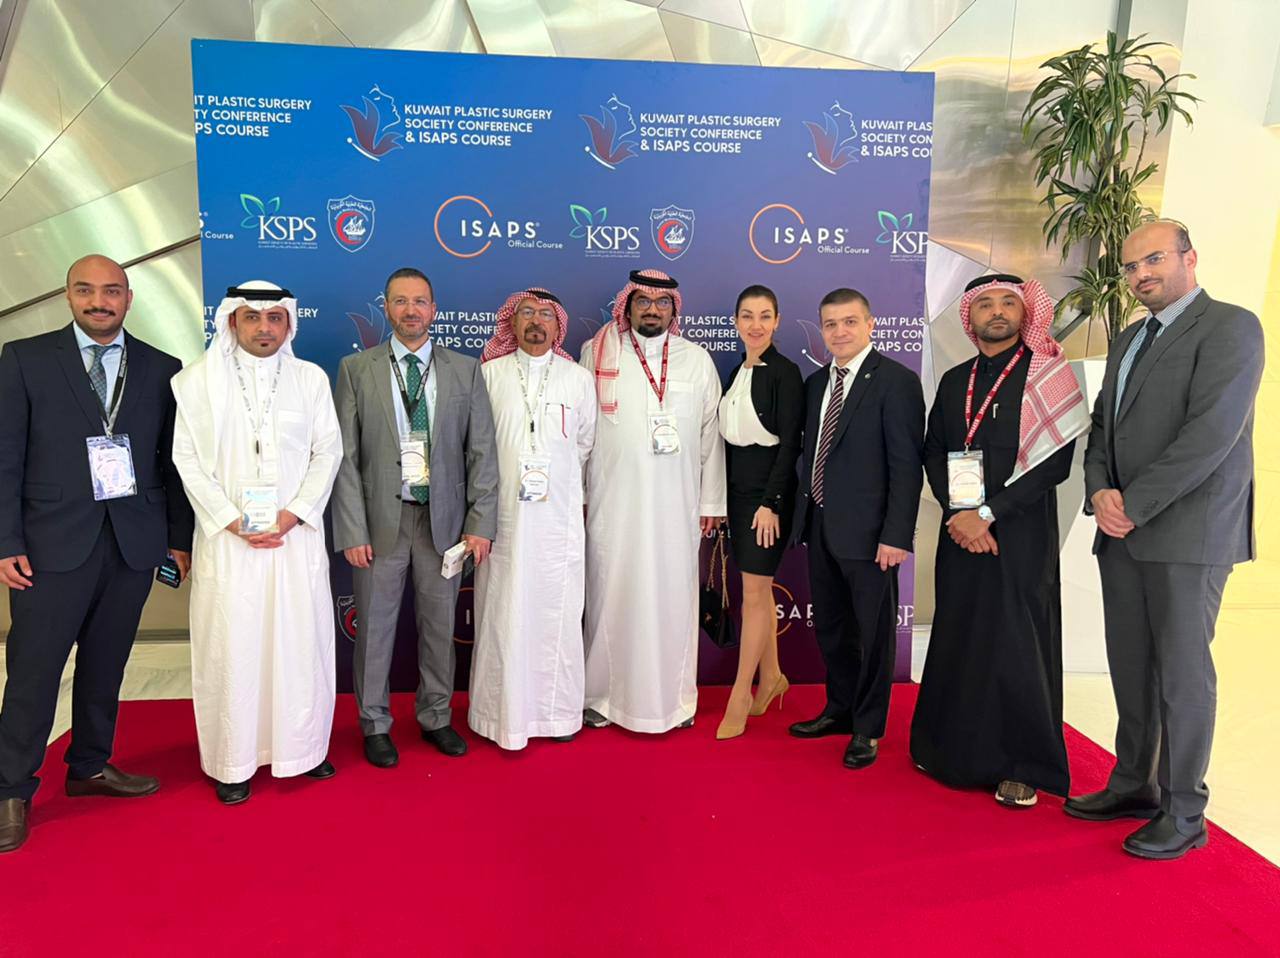 В Кувейте состоялся Международный конгресс по пластической хирургии «Kuwait Plastic Surgery Society Conference and ISAPS Course»